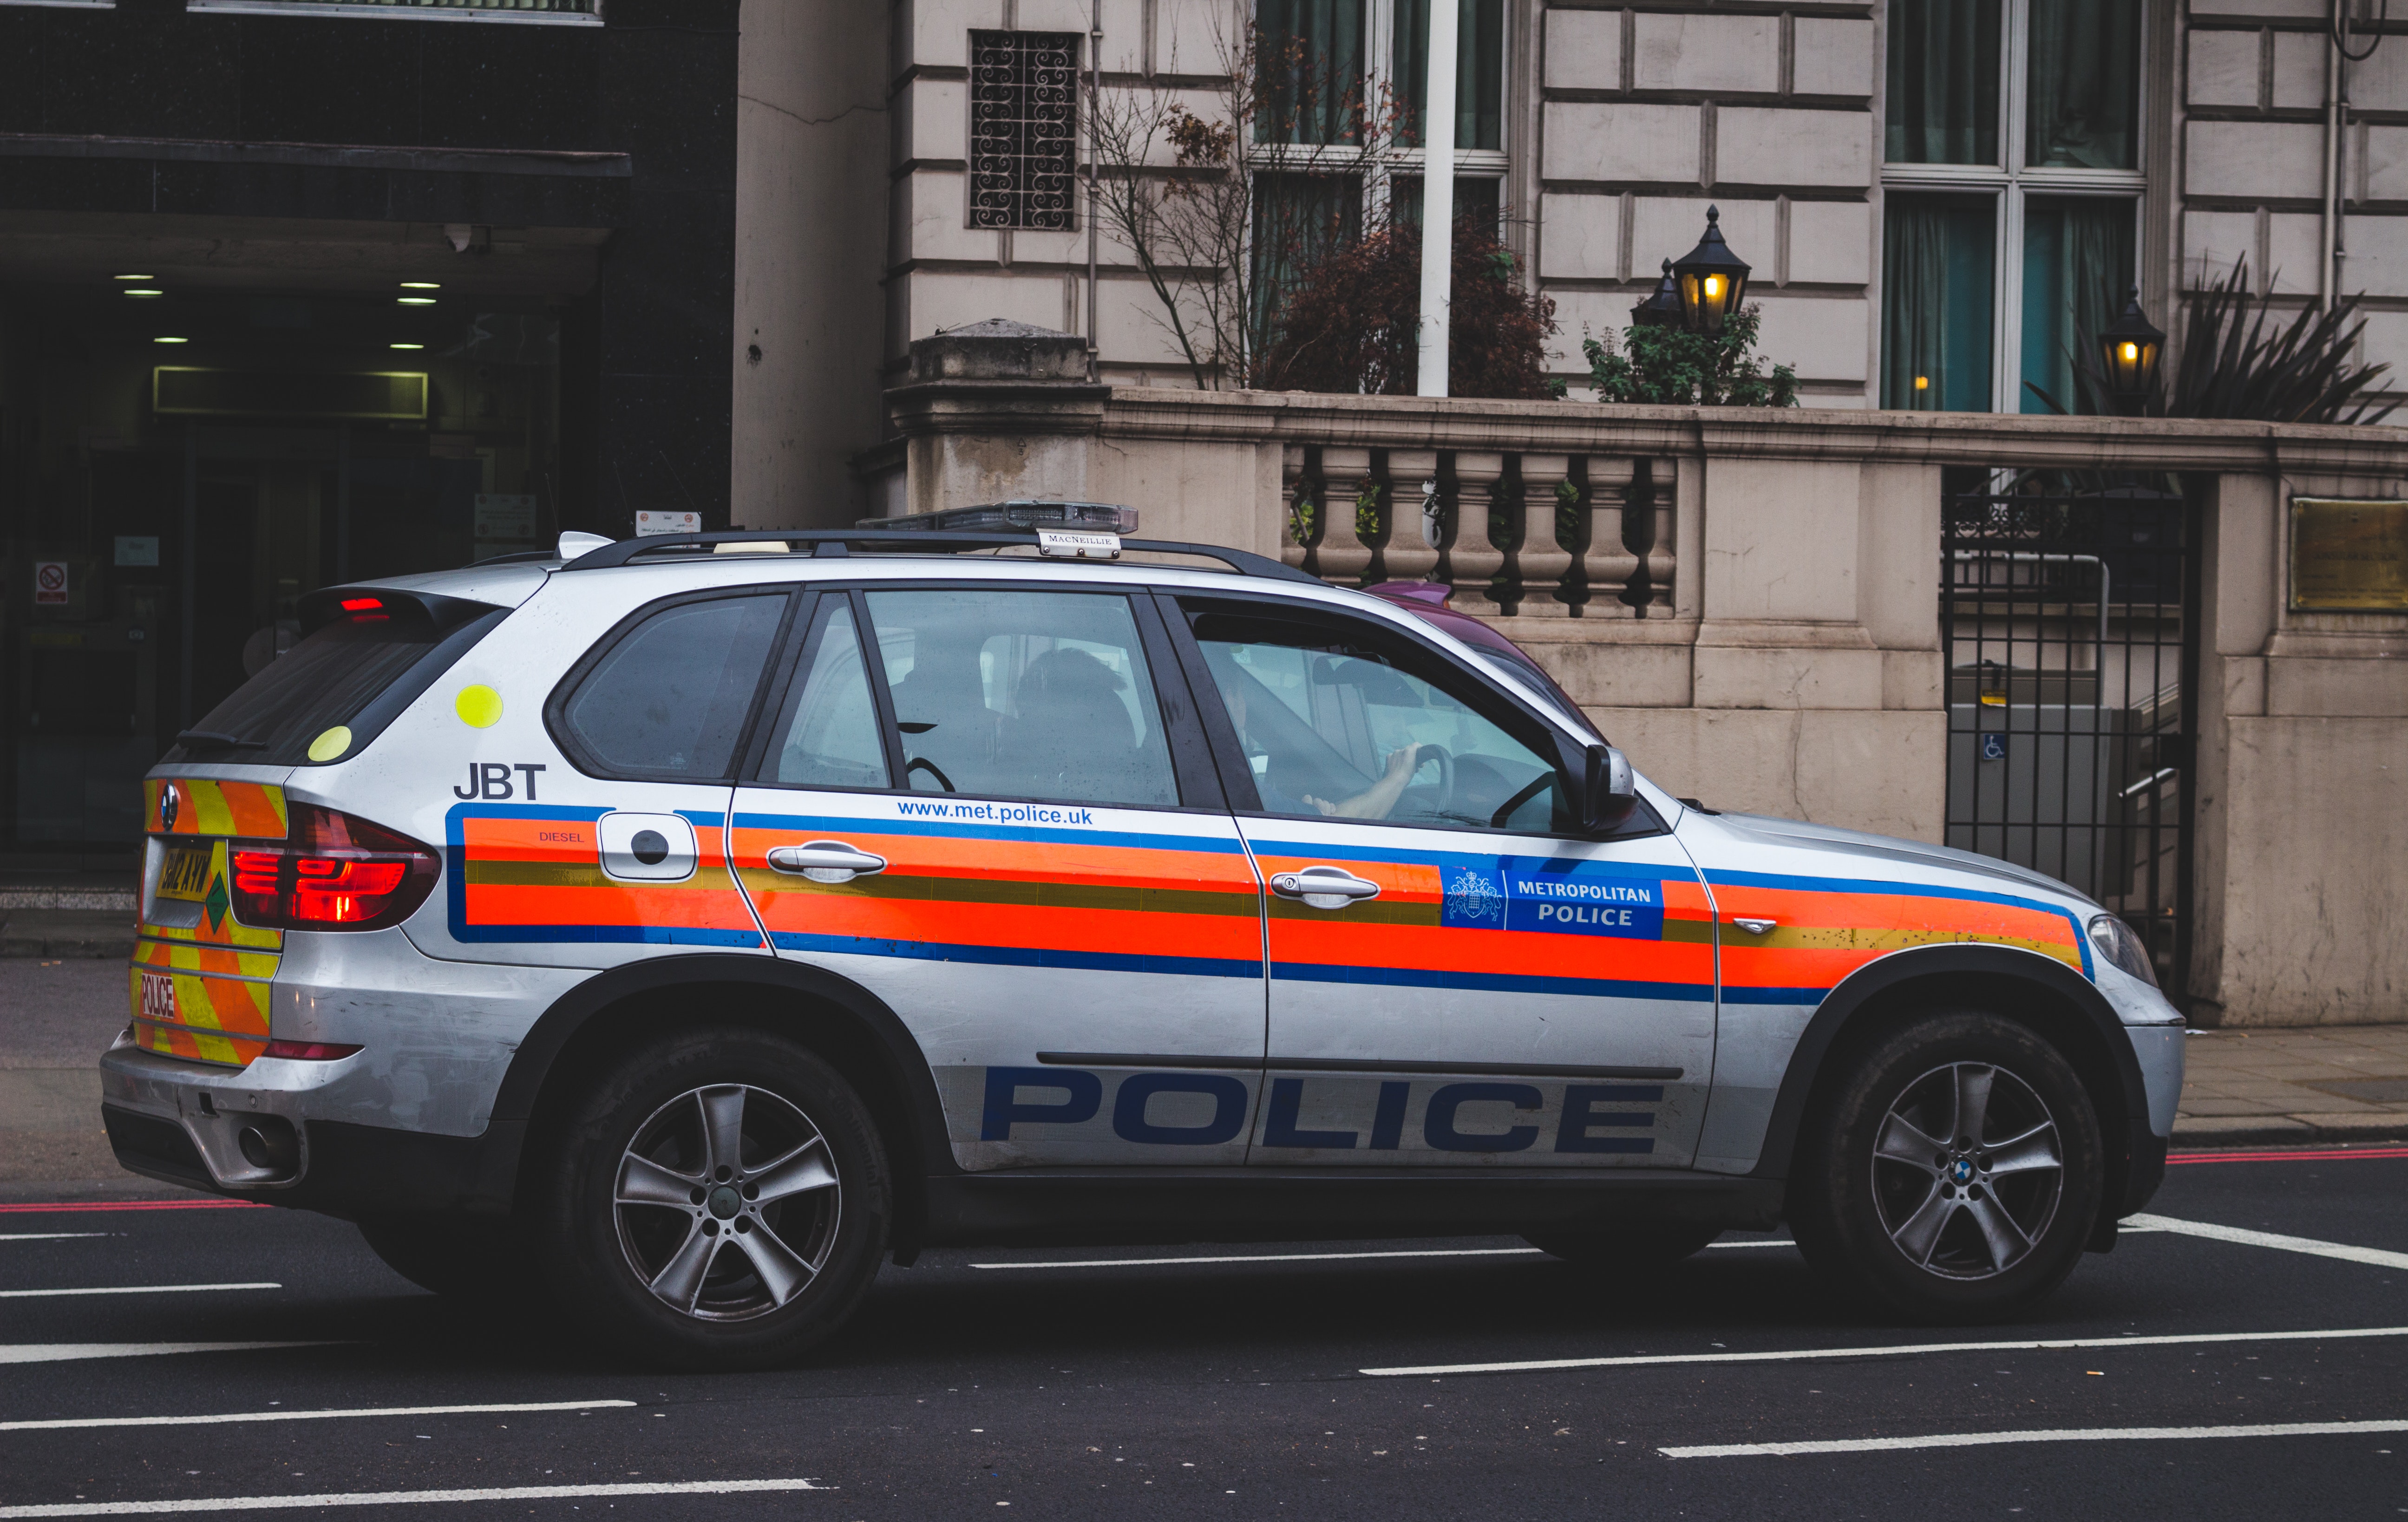 A Met Police car is seen in London